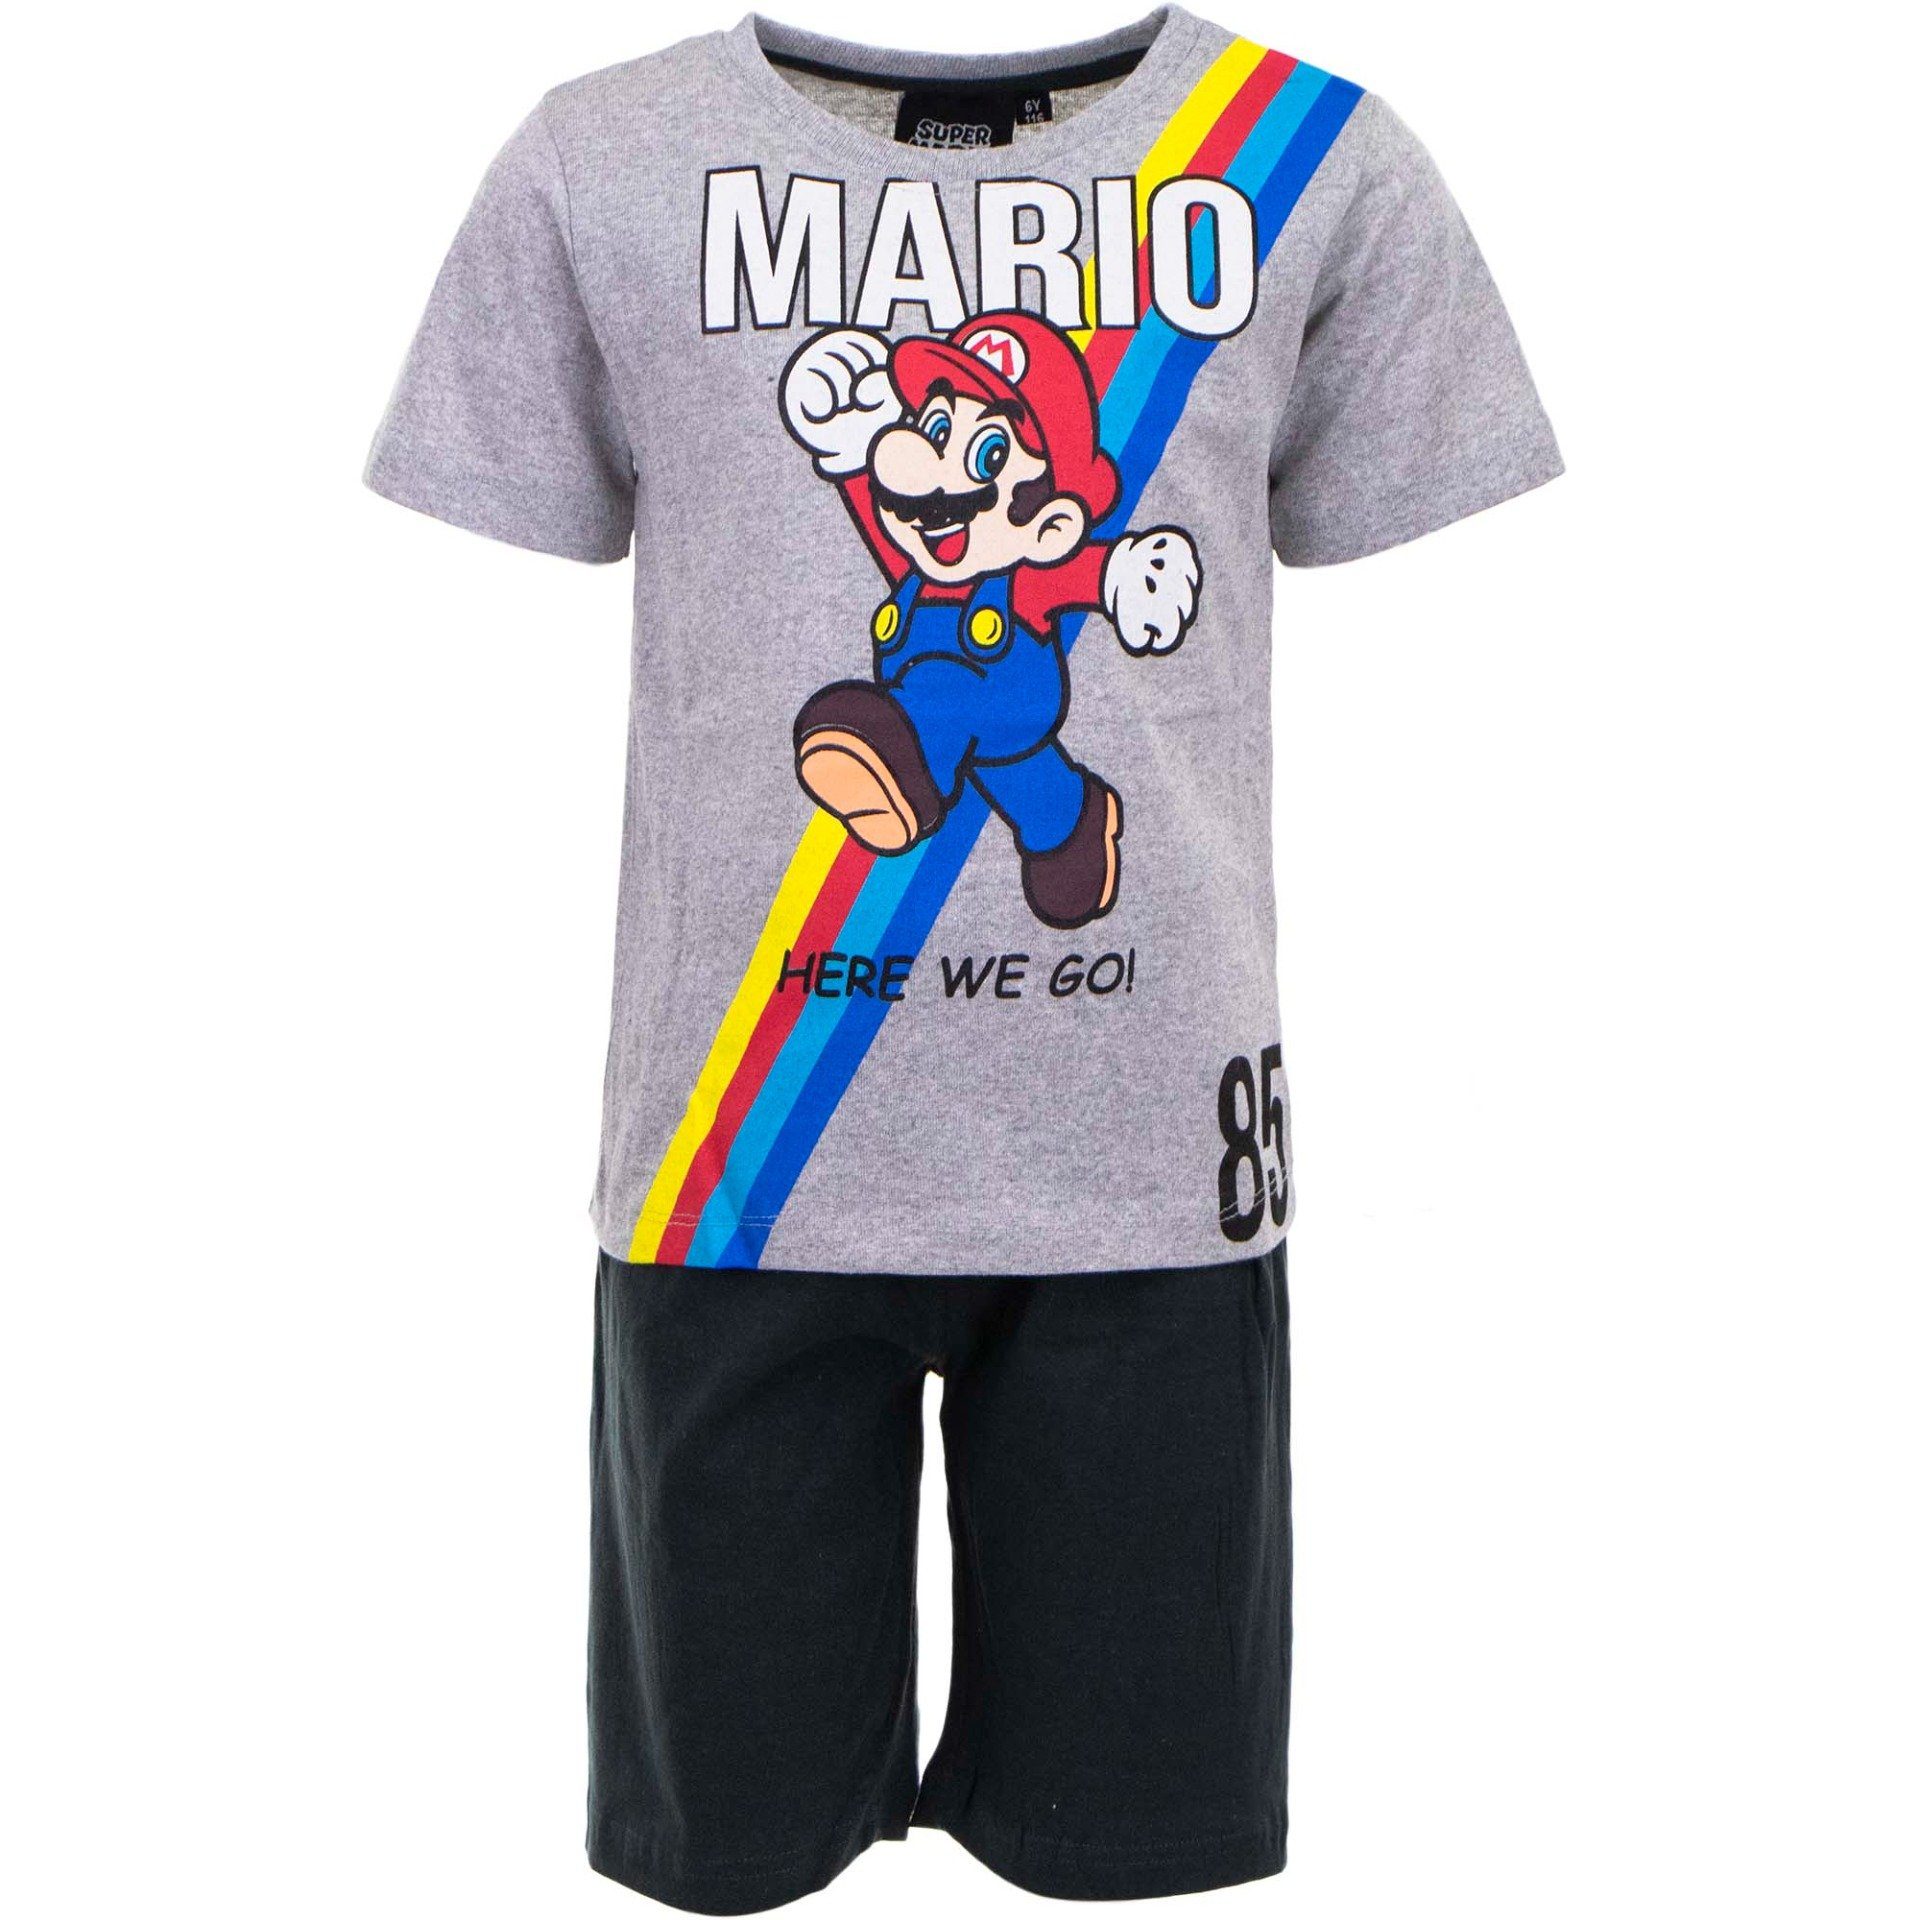 Super Mario Schlafanzug Here We Go Jungen Pyjama Gr. 98 bis 128, Baumwolle, Grau Schwarz | Pyjamas